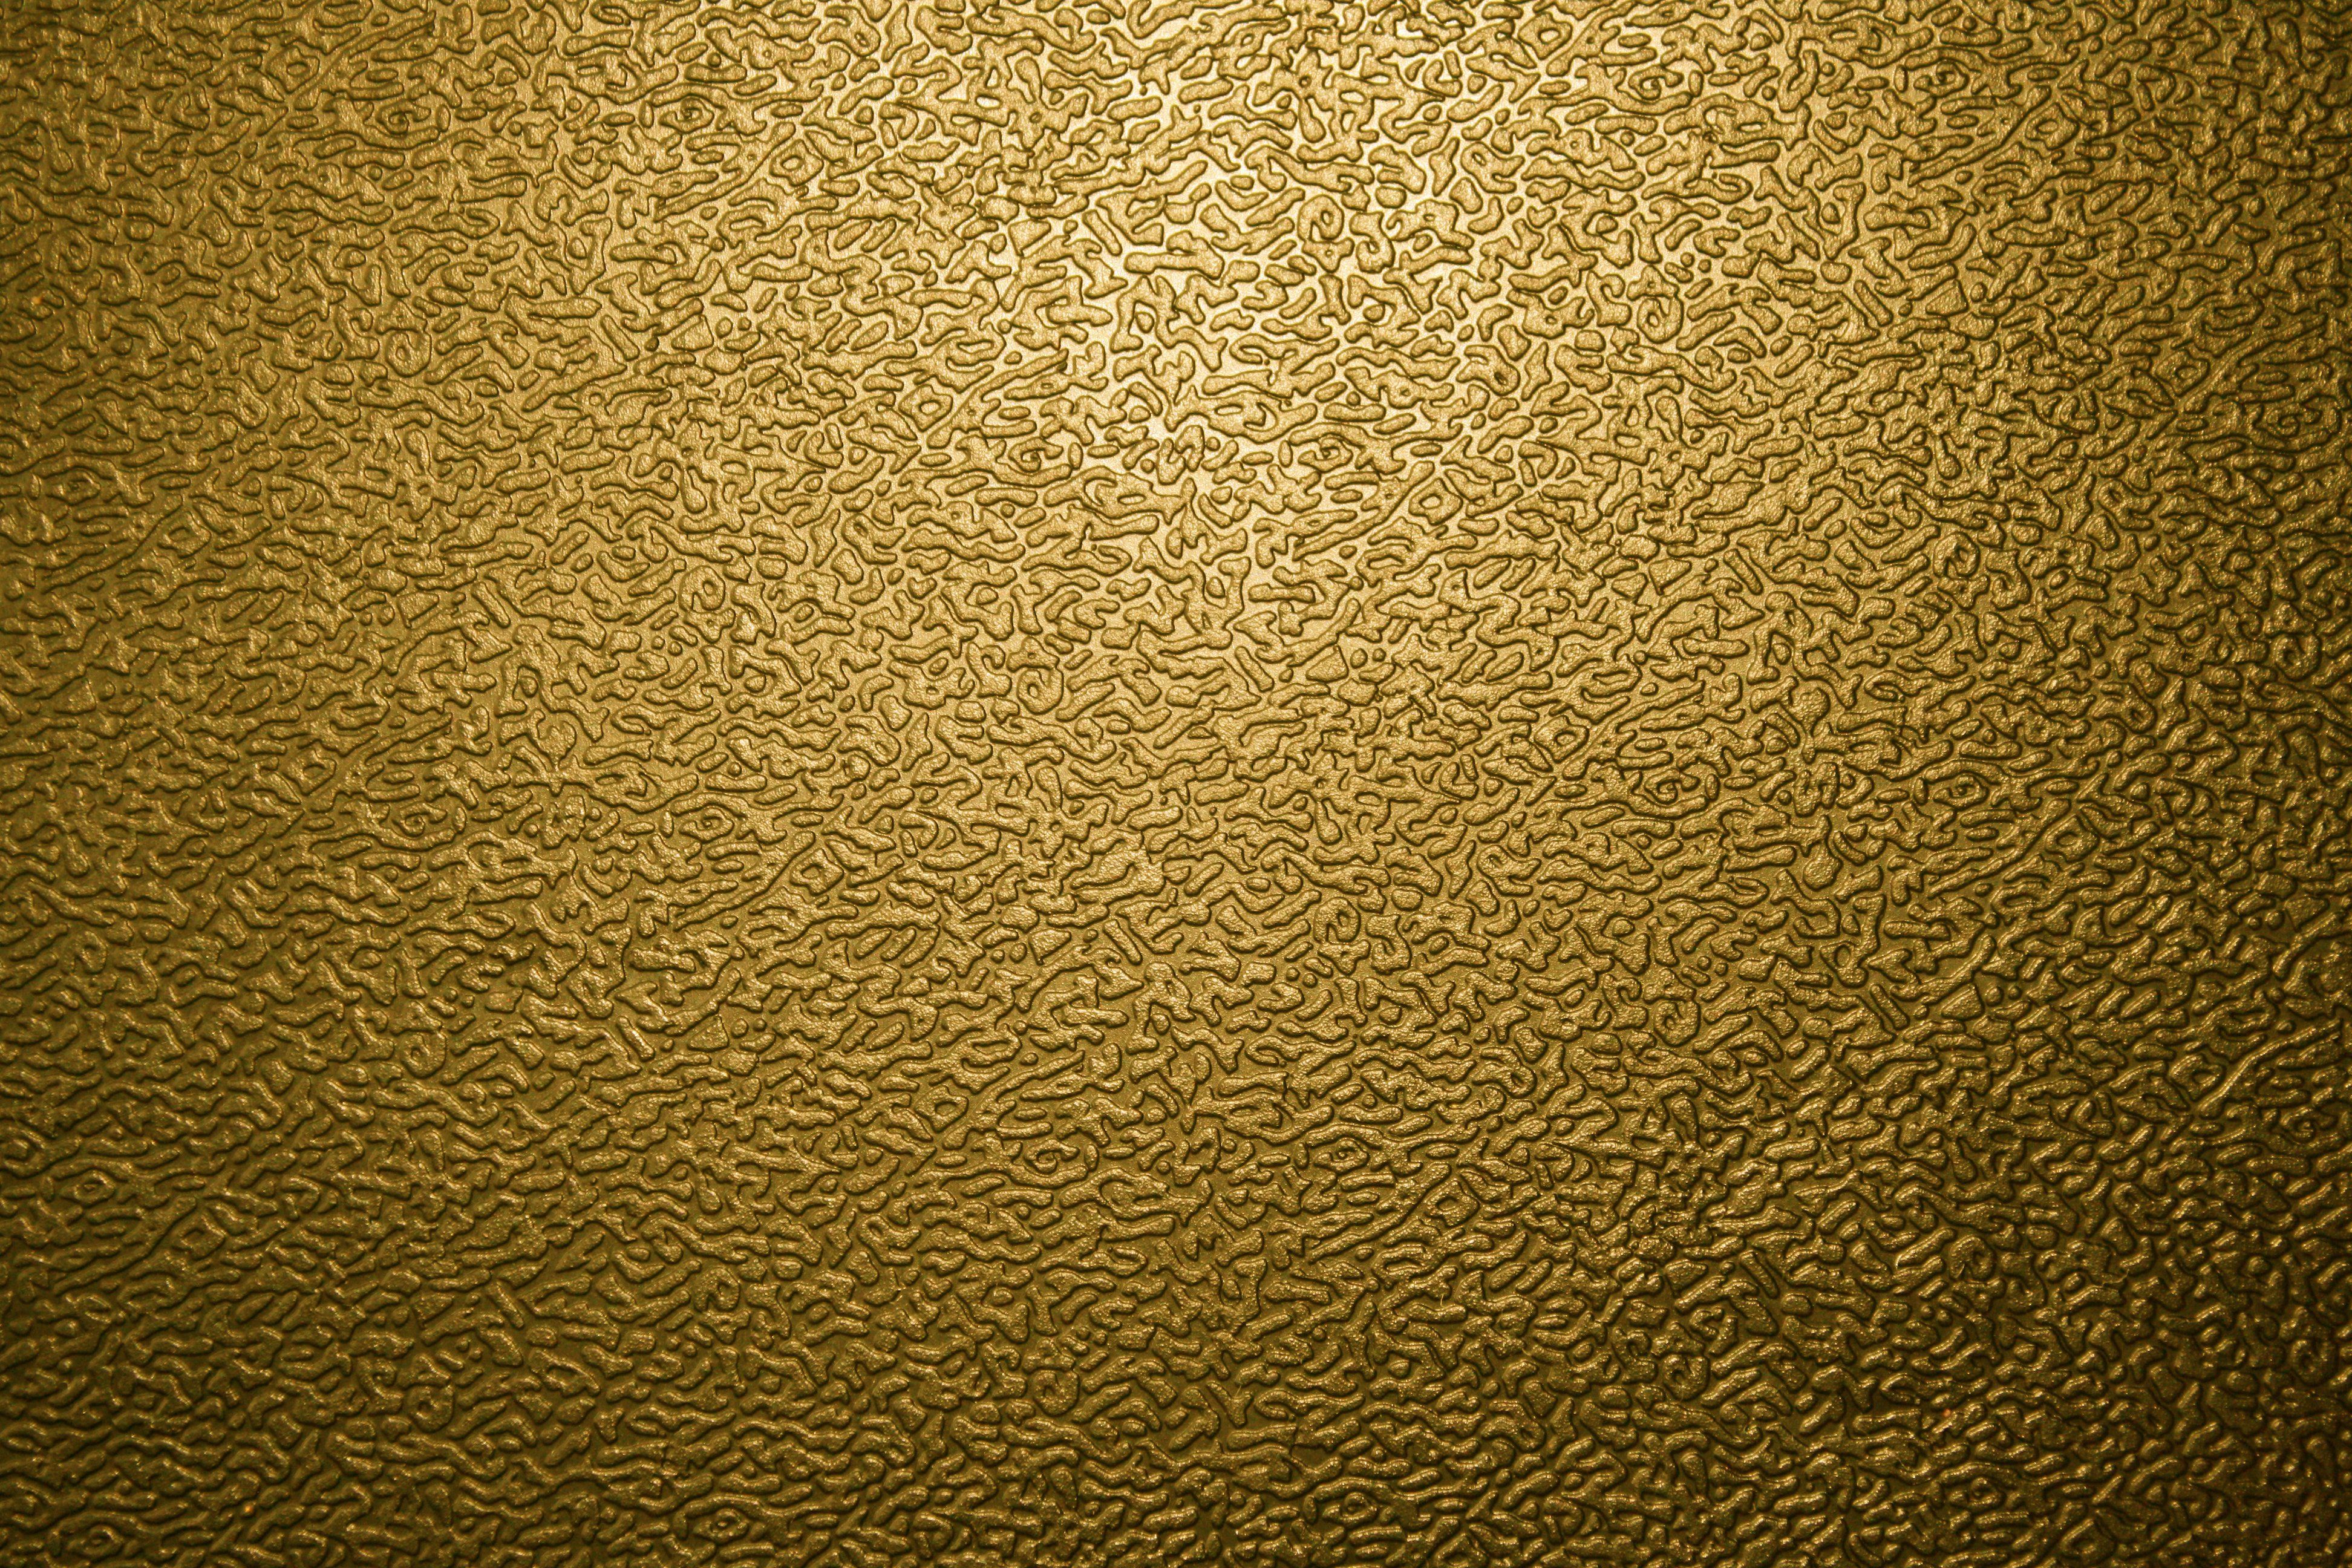 عکس متریال طلا تری دی مکس فوق العاده زیبا با کیفیت بالا